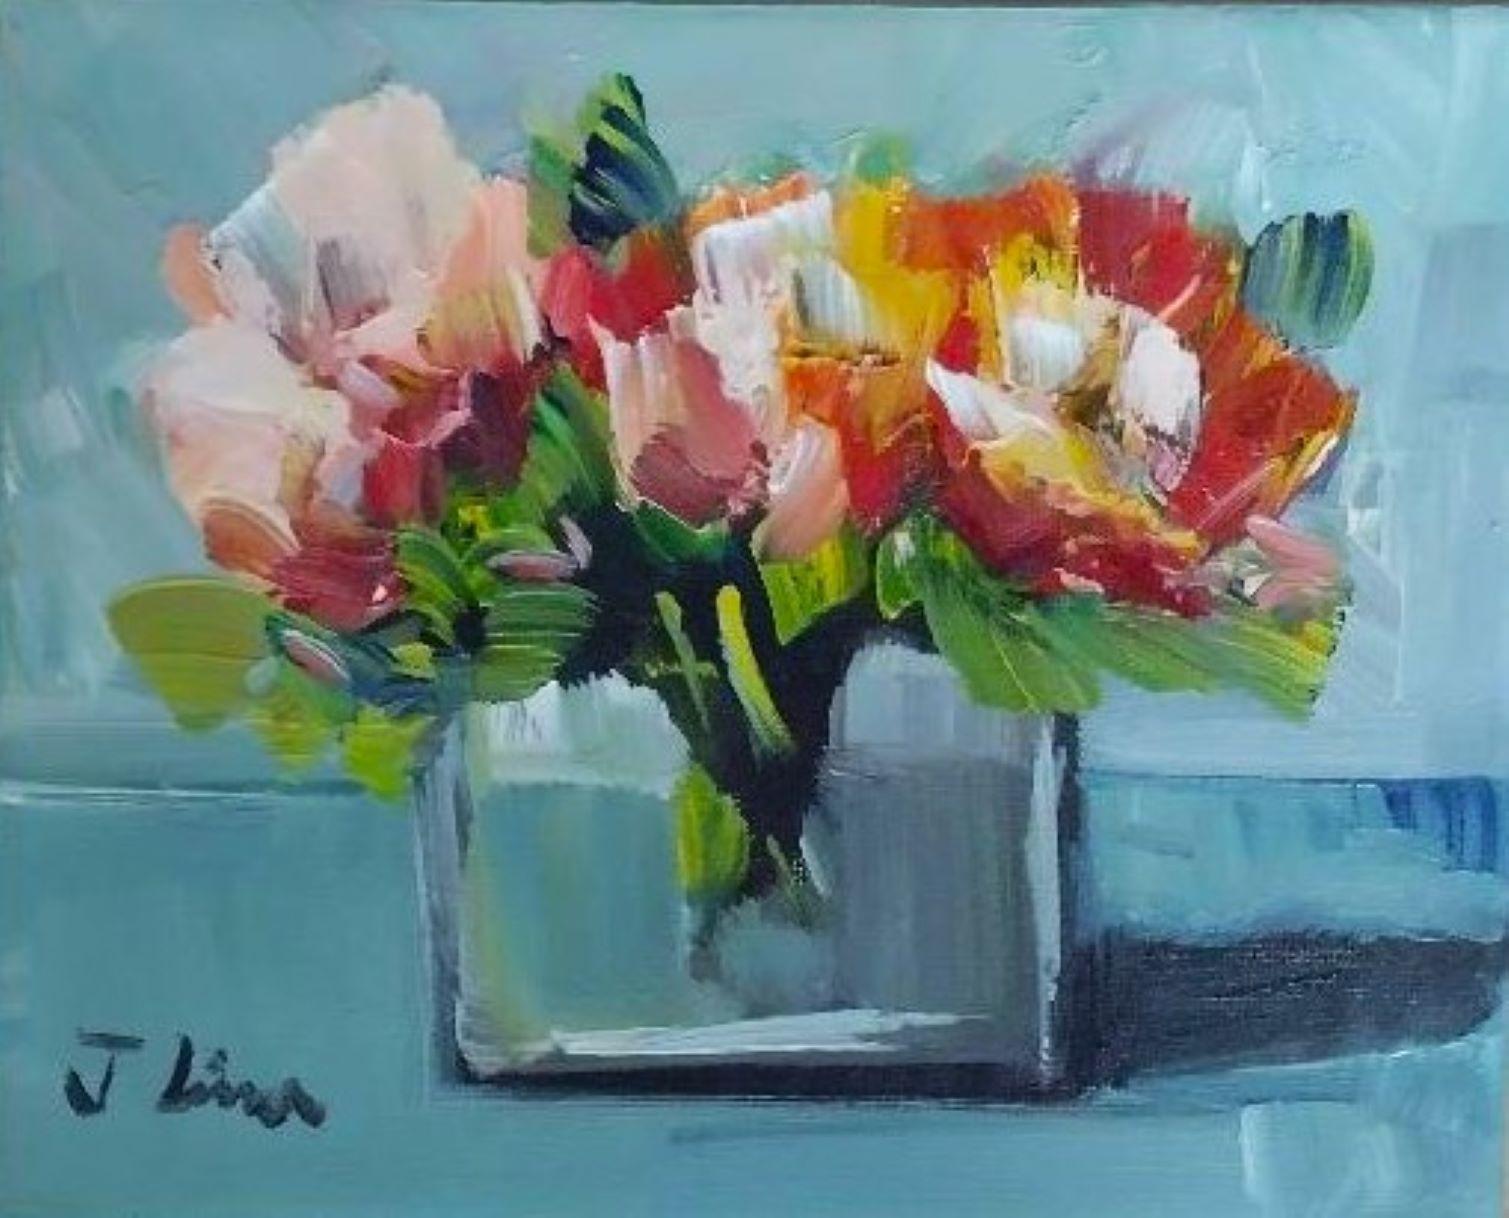 Vase mit Blumen III – Original impressionistisches Ölgemälde auf Leinwand 2022 – Painting von Jose Lima